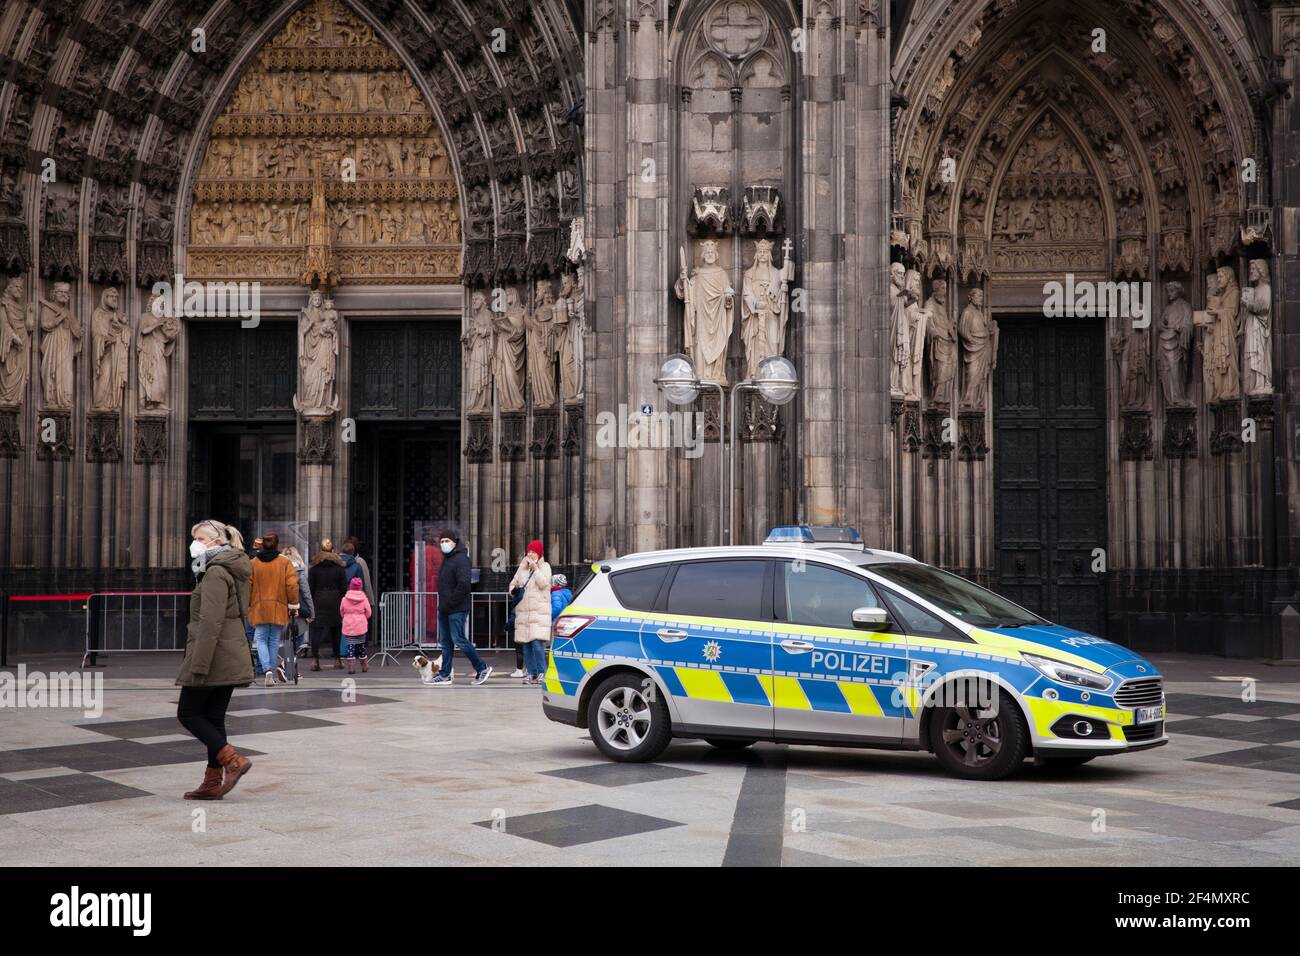 Coche de policía en frente de la catedral de Colonia, Alemania. Polizeiwagen vor dem Dom, Koeln, Deutschland. Foto de stock